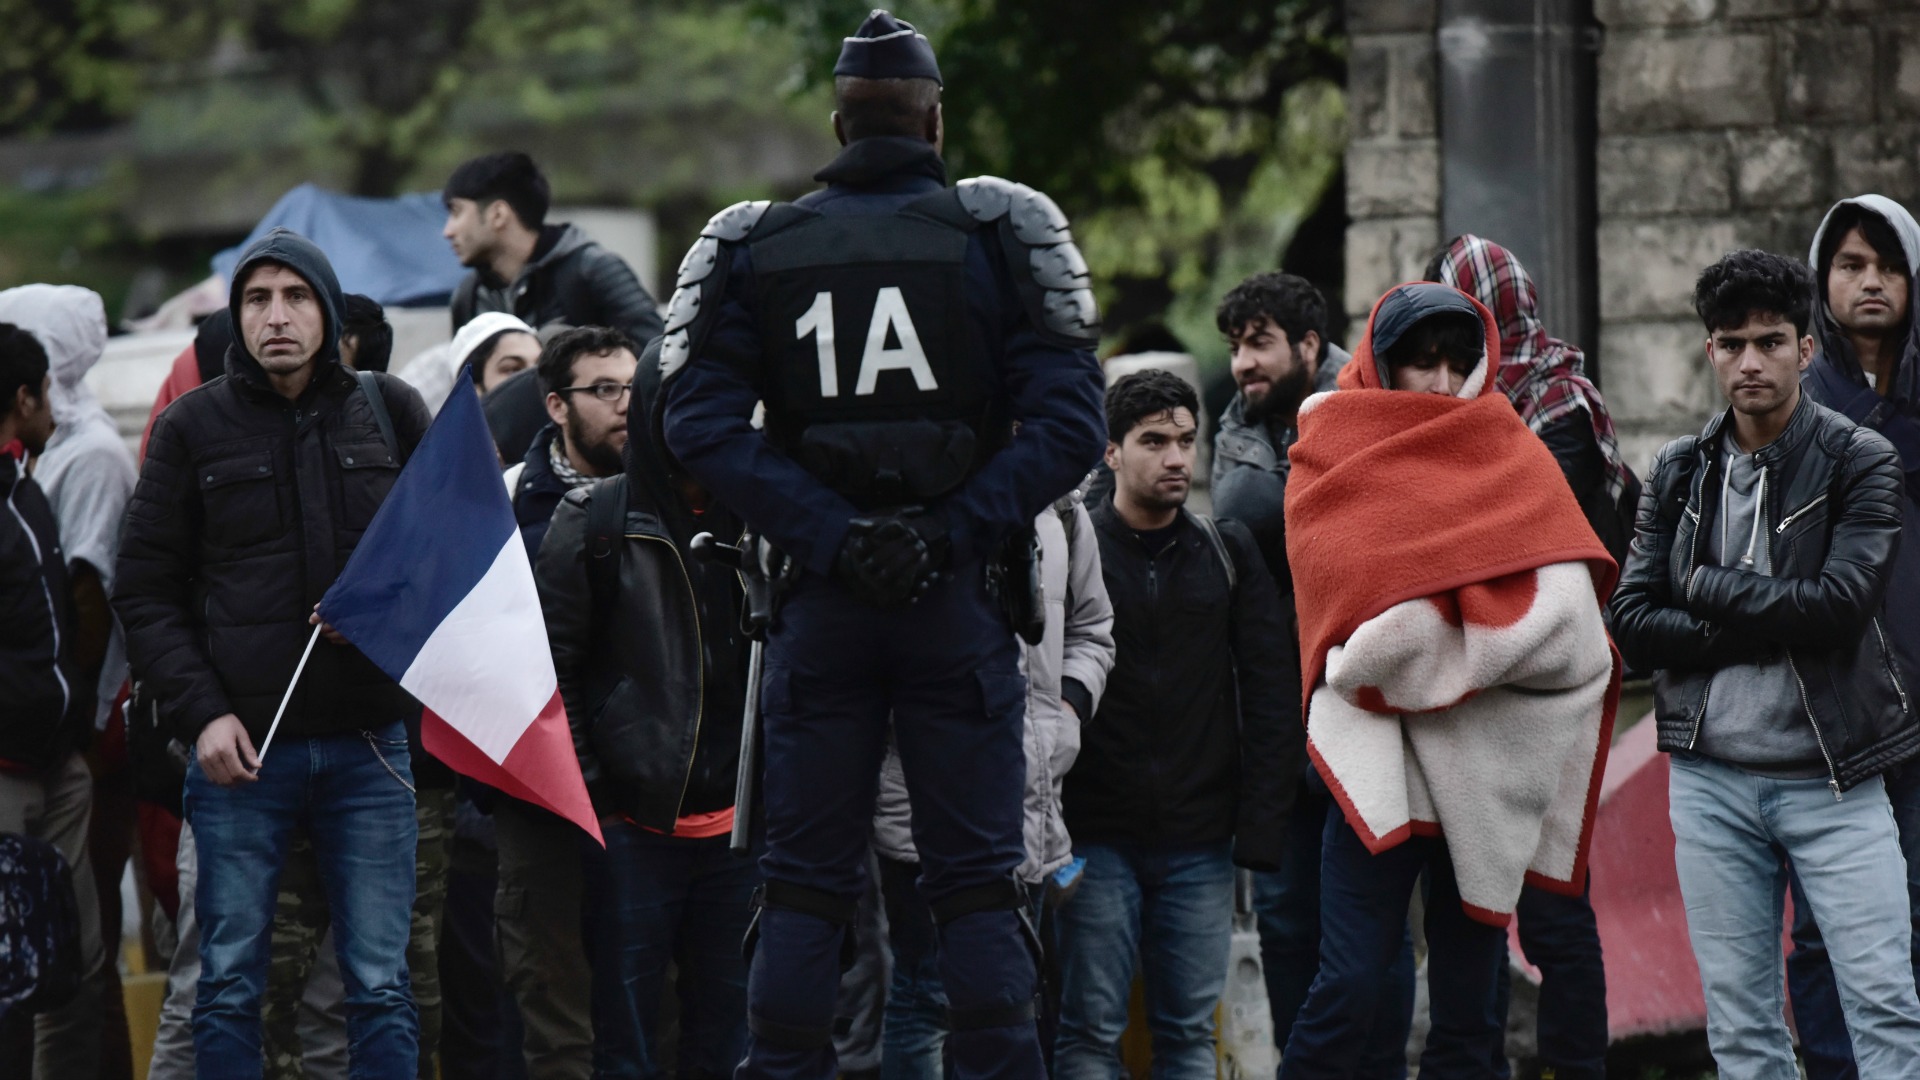 La policía desaloja unos campamentos de migrantes en el norte de París